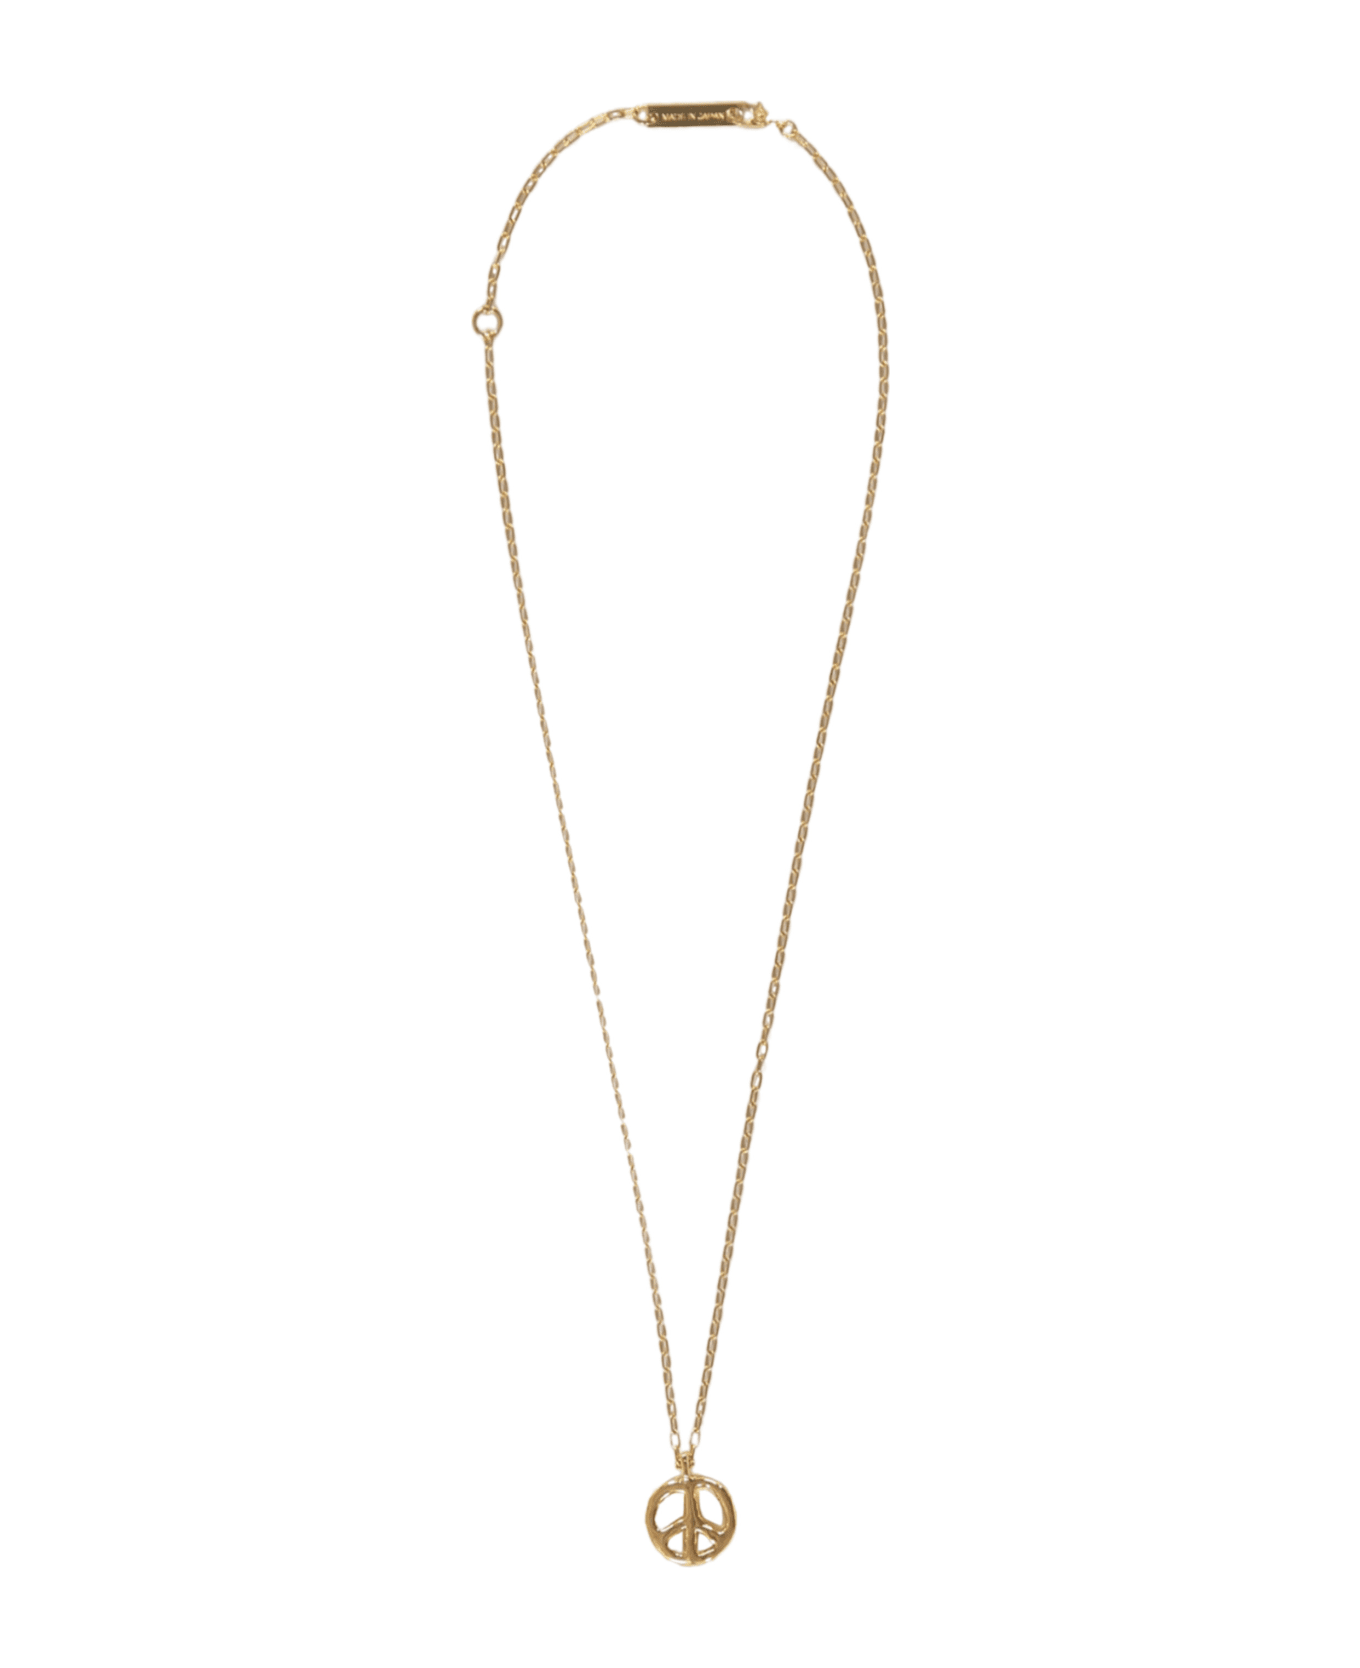 AMBUSH Chain Necklace With Decorative Pendant - Gold ジュエリー